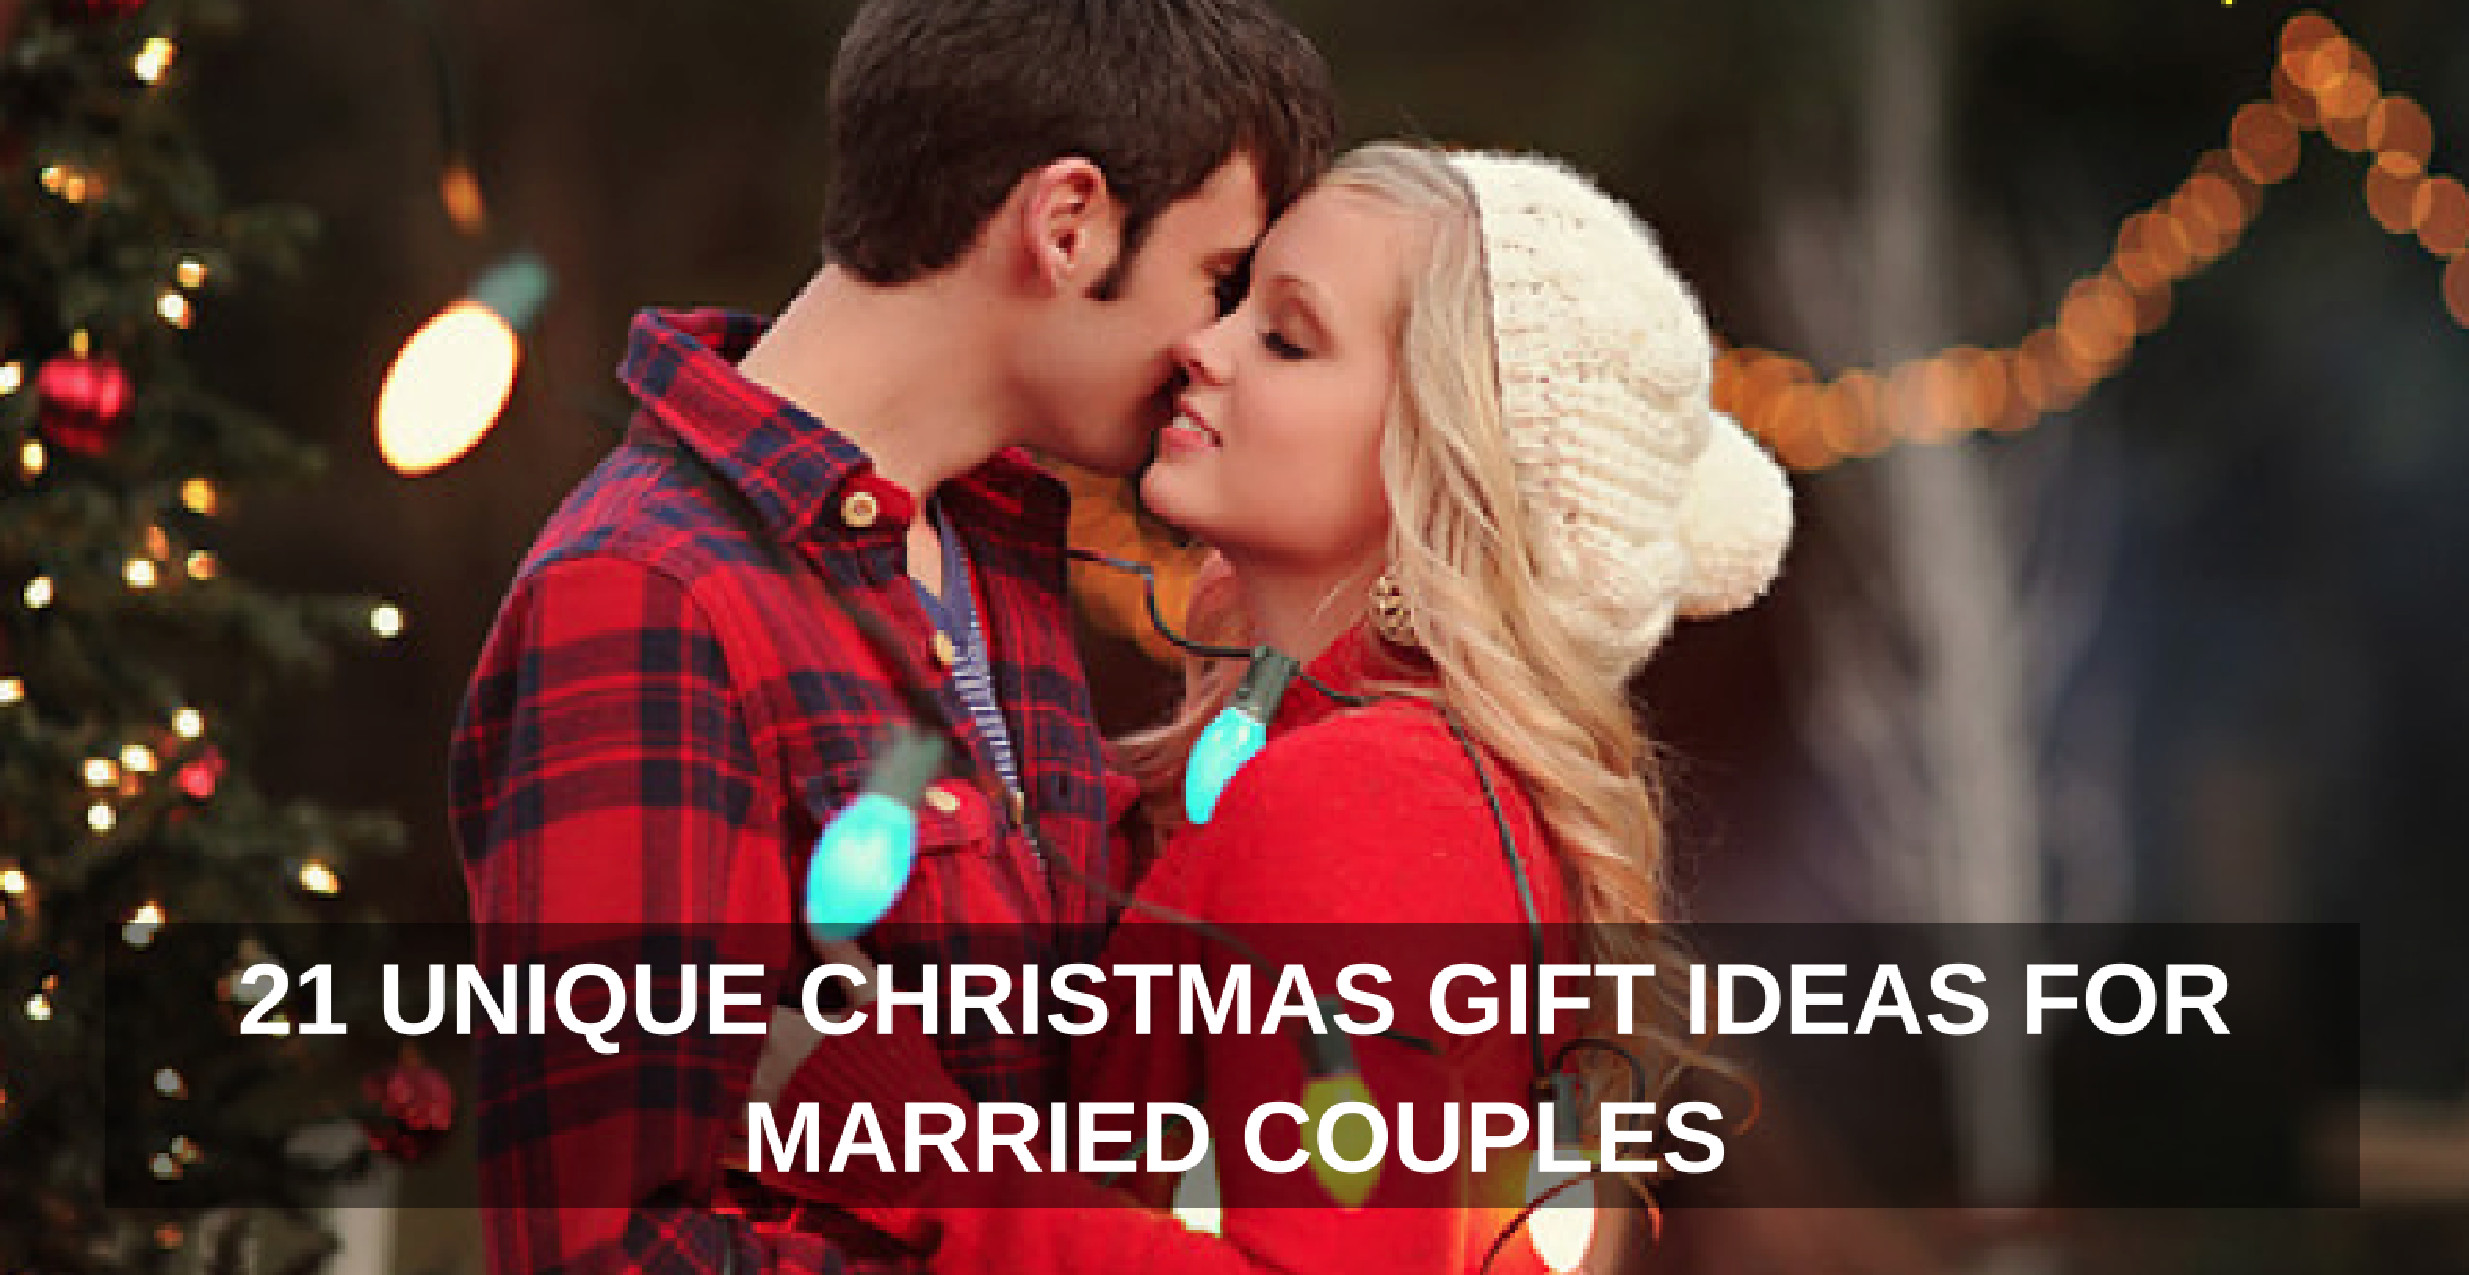 Unique Christmas Gift Ideas For Couples
 21 Unique Christmas Gift Ideas for Married Couples